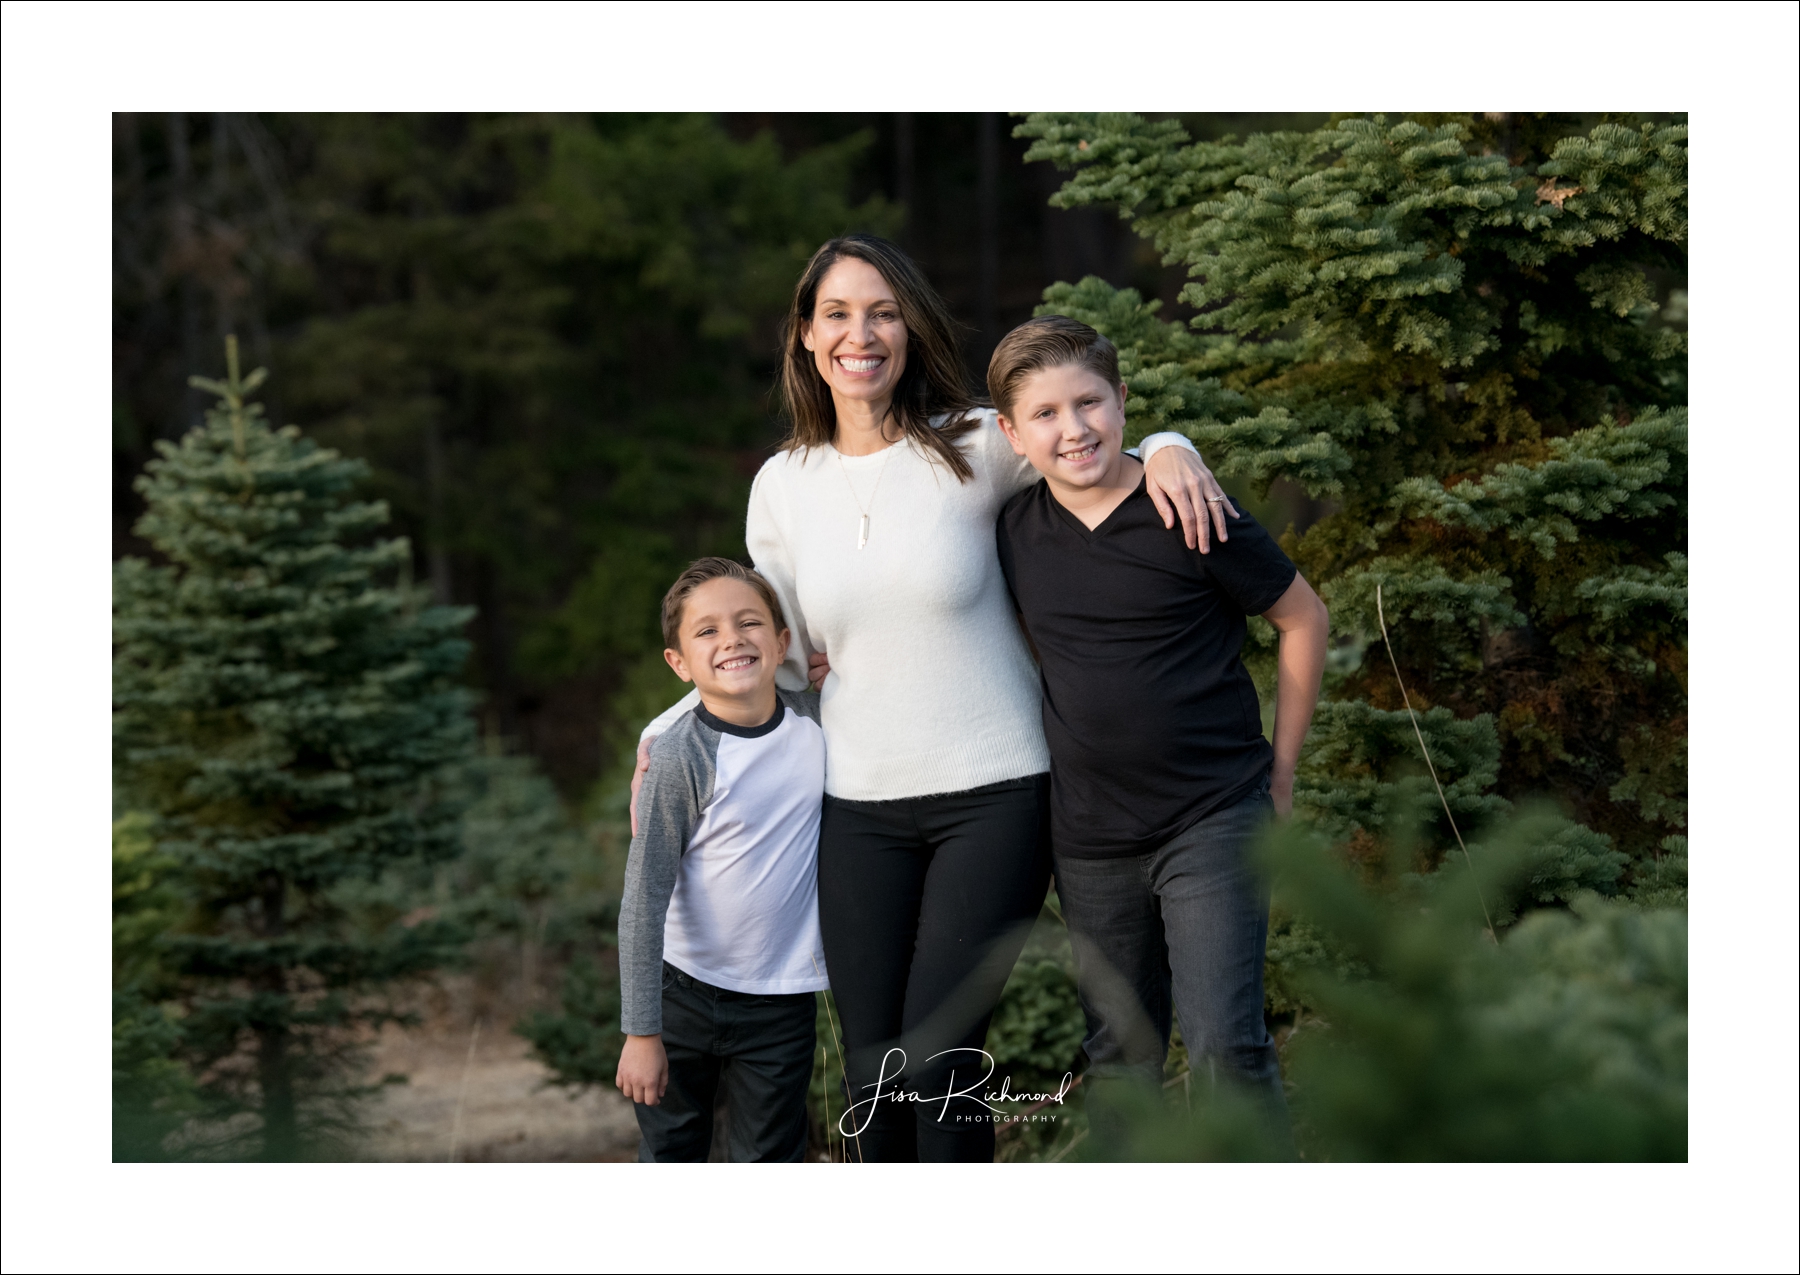 The Gustafson Family Photography at Harris Tree Farm 2018